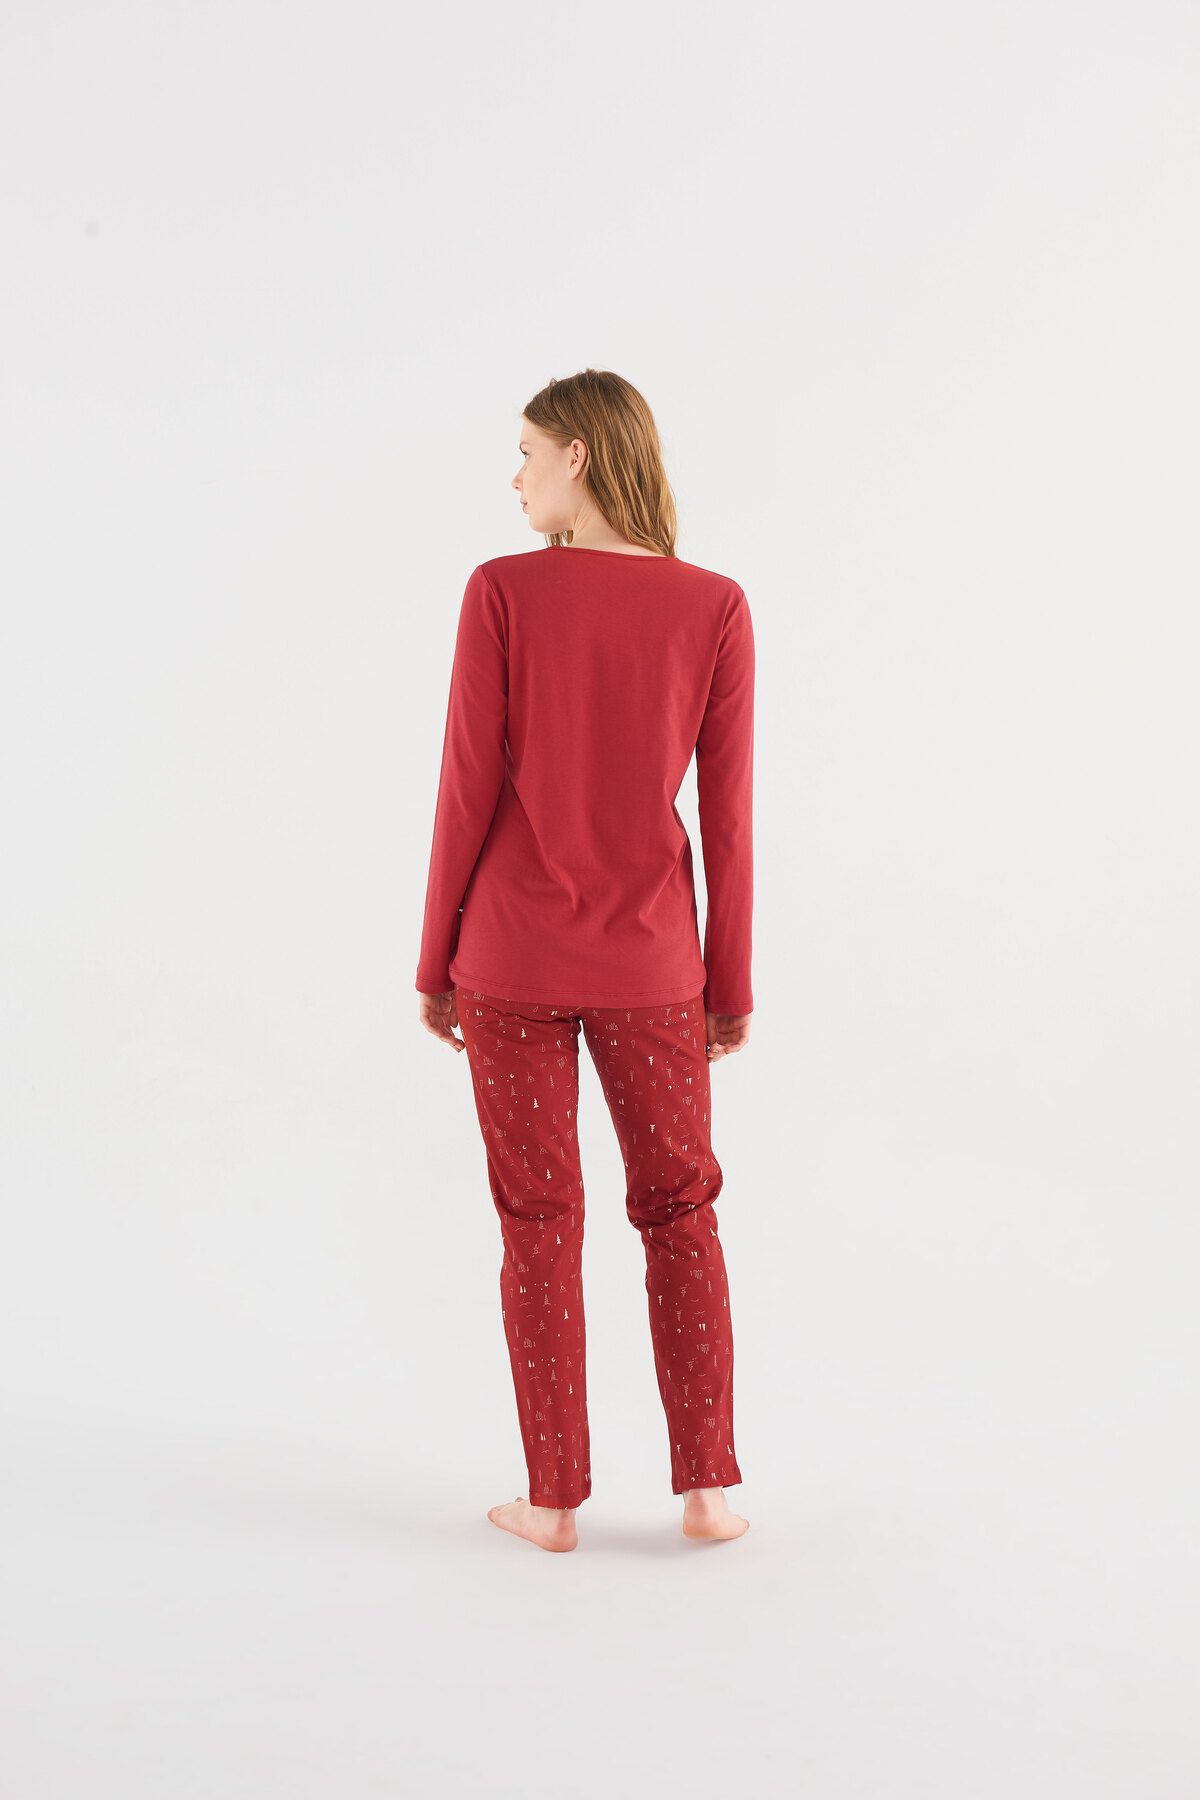 Women's Red Pyjamas